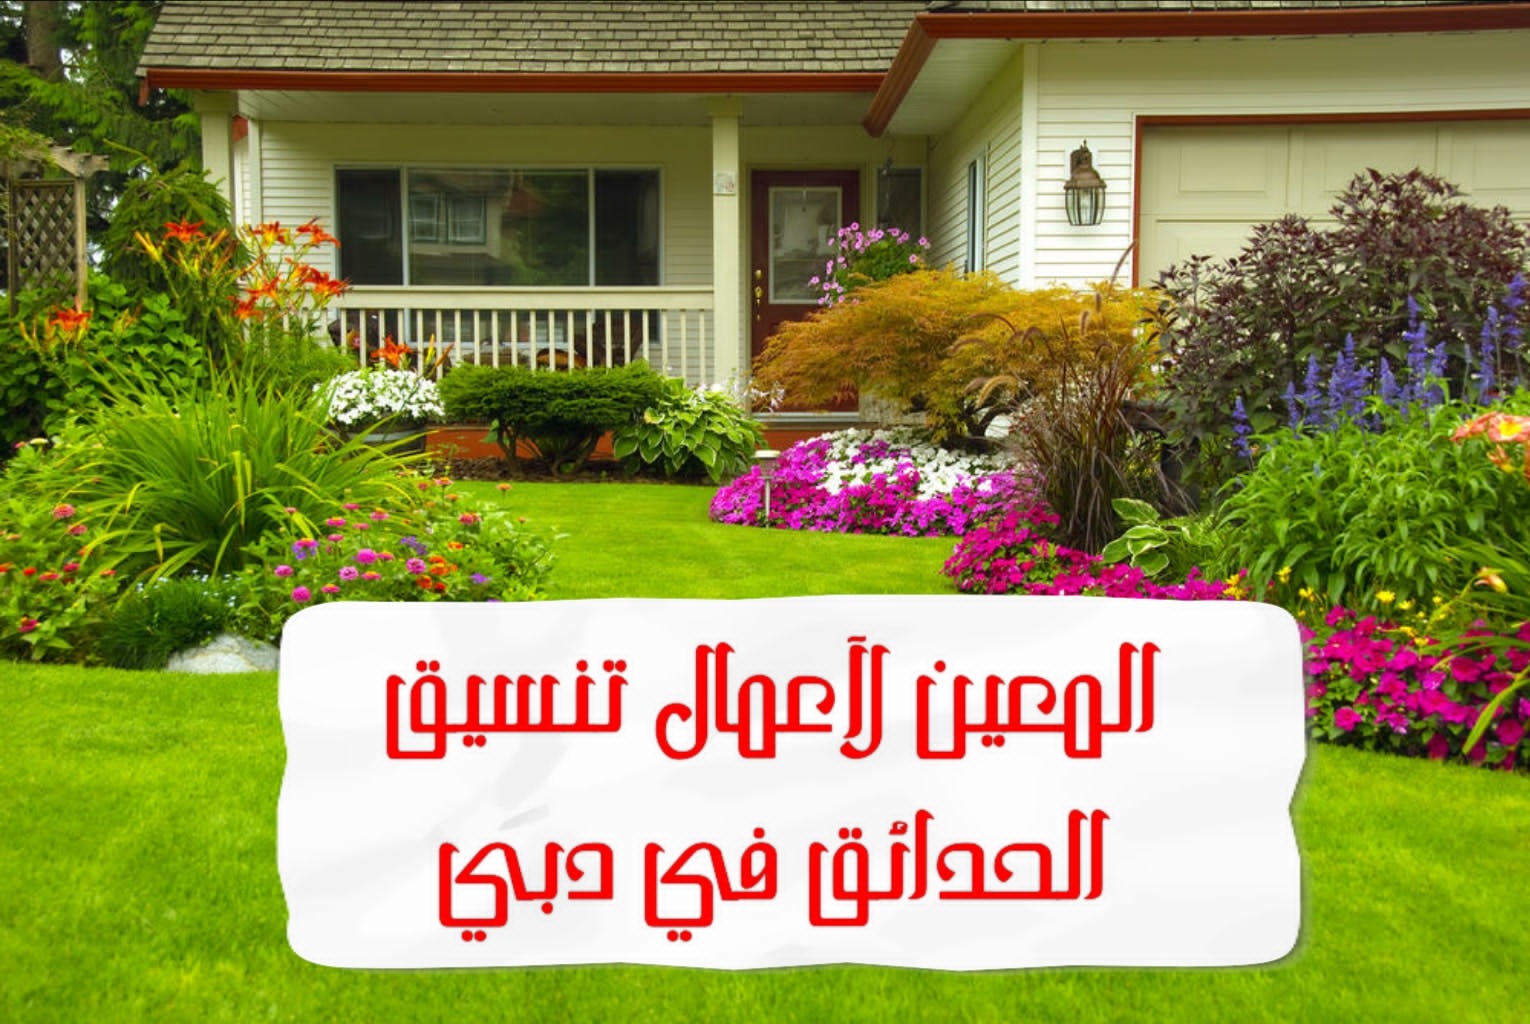 المعين لأعمال تنسيق الحدائق في دبي – 0567833266